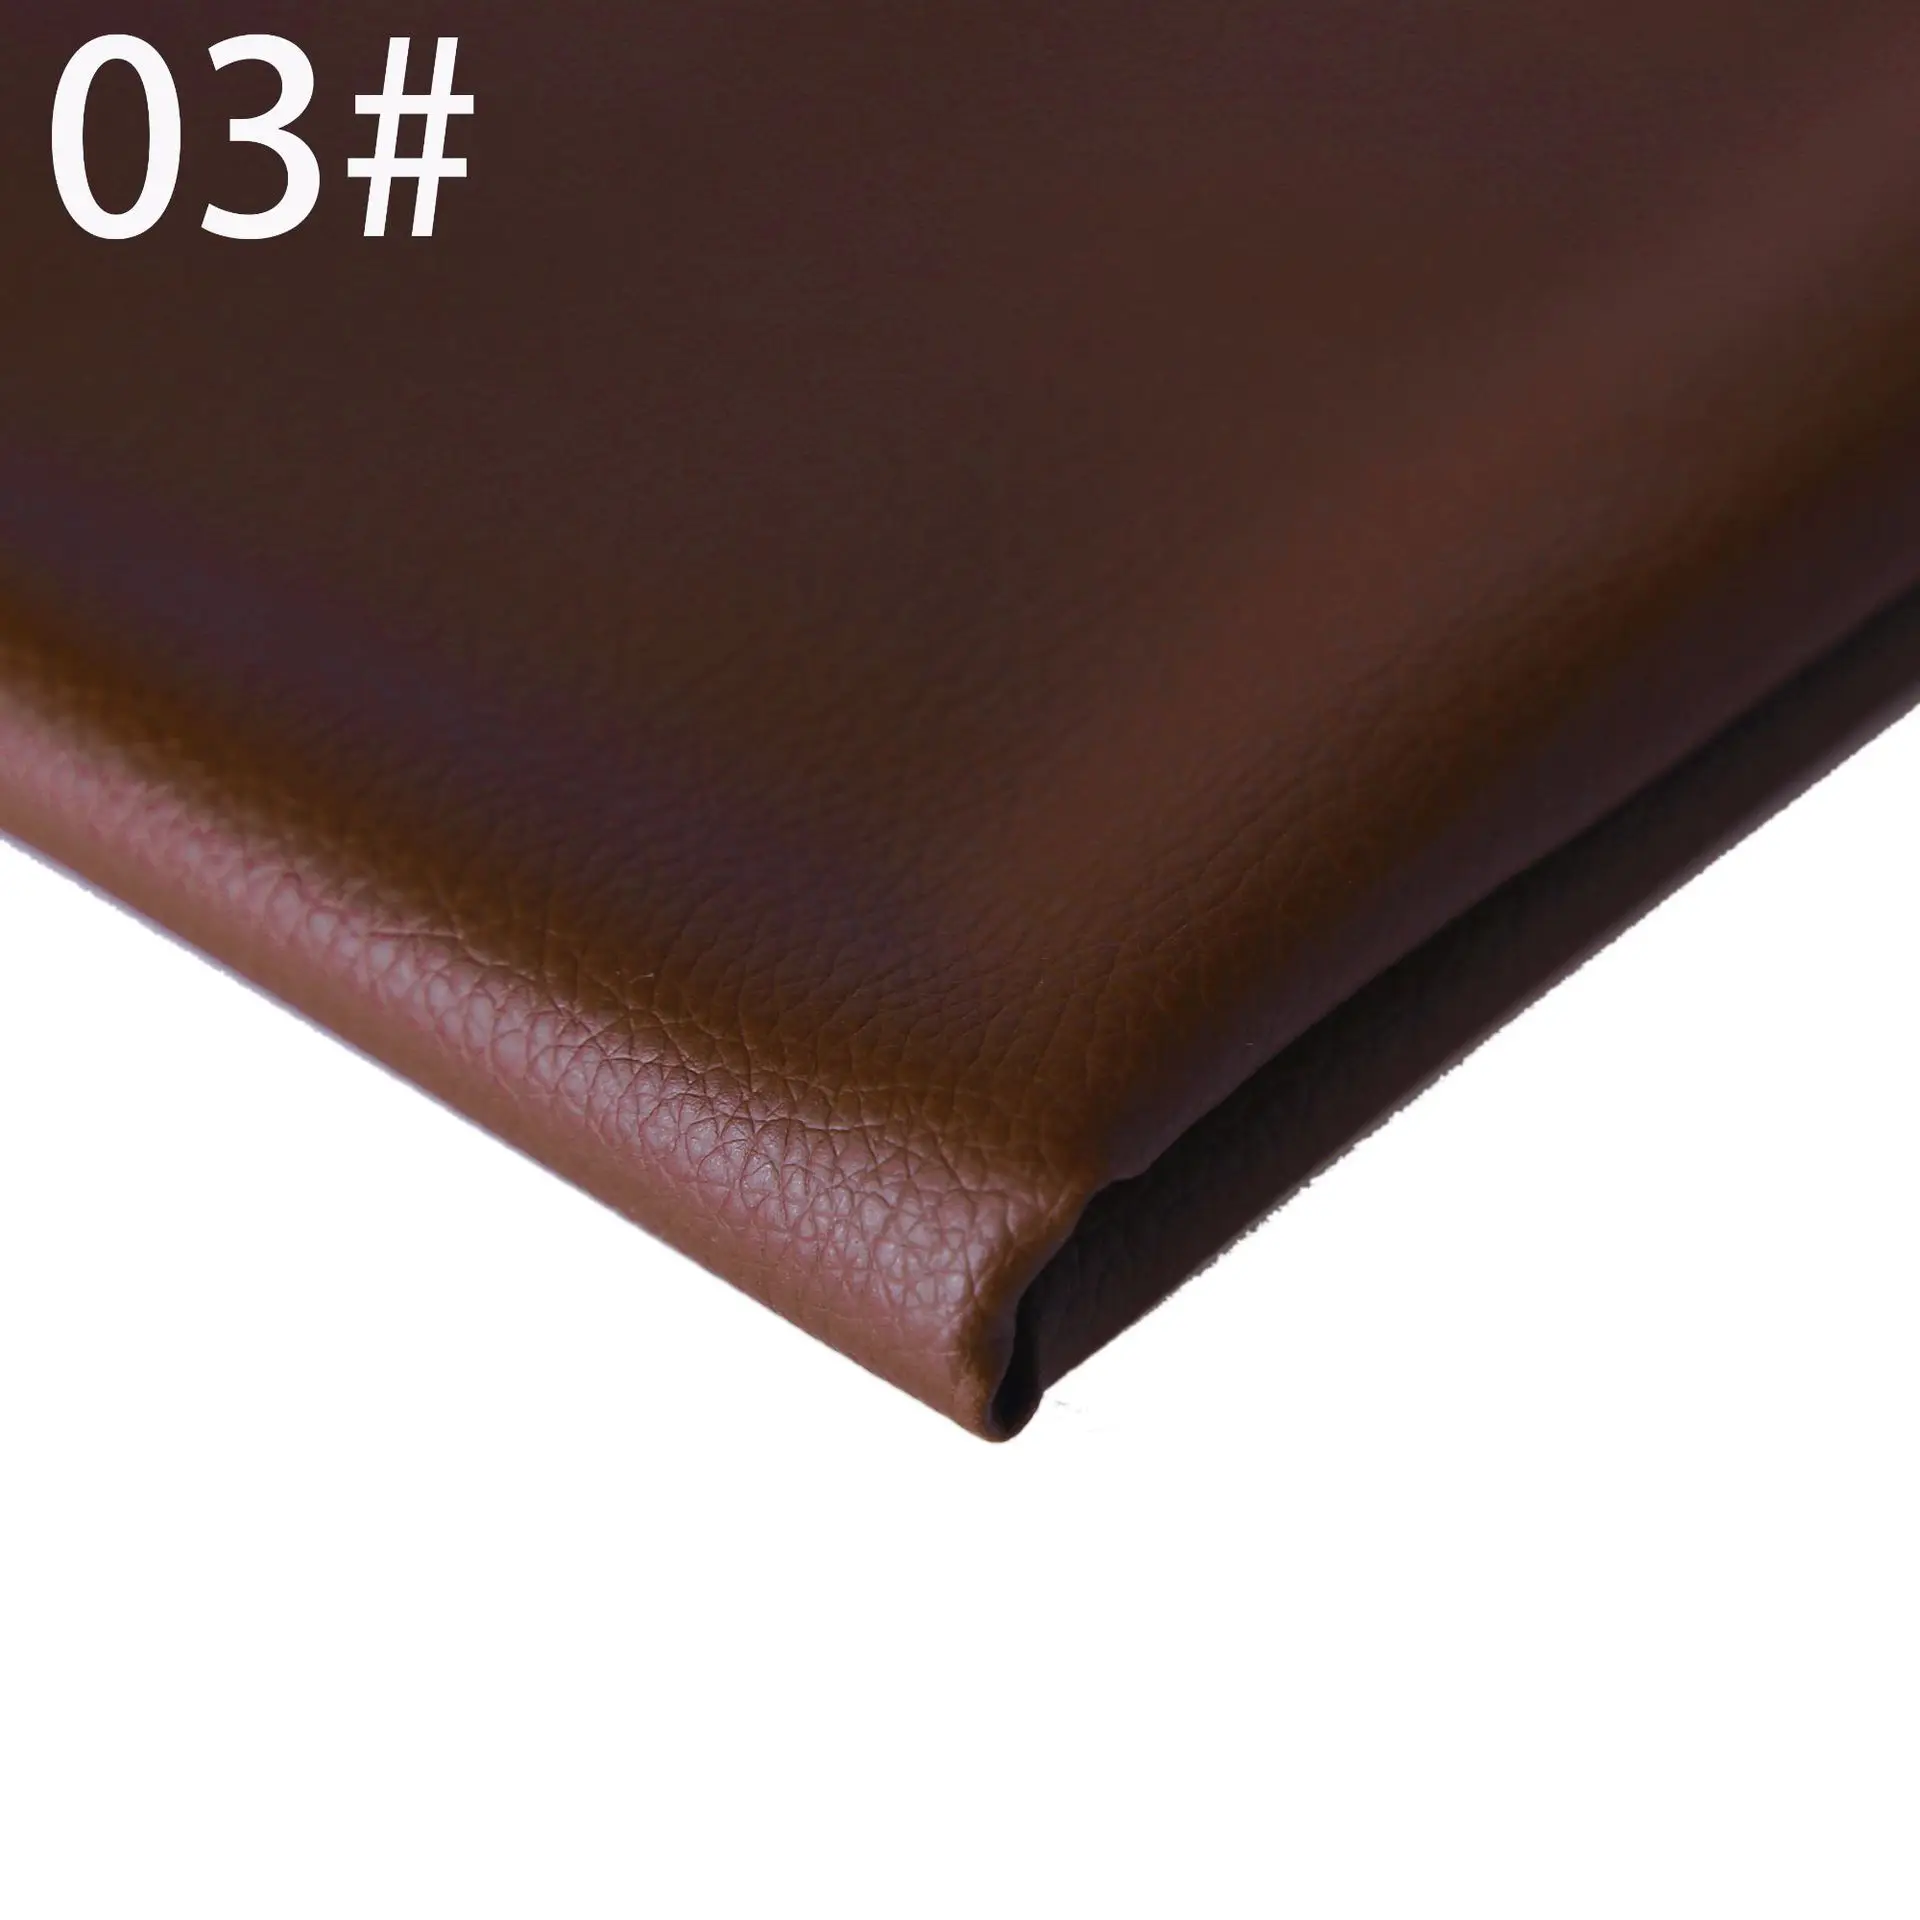 DE90 маленький личи 0,07 см Матовый кожаный диван из ткани Подушка искусственная кожа задний план стены мягкий пакет жесткий пакет кожа - Цвет: 3